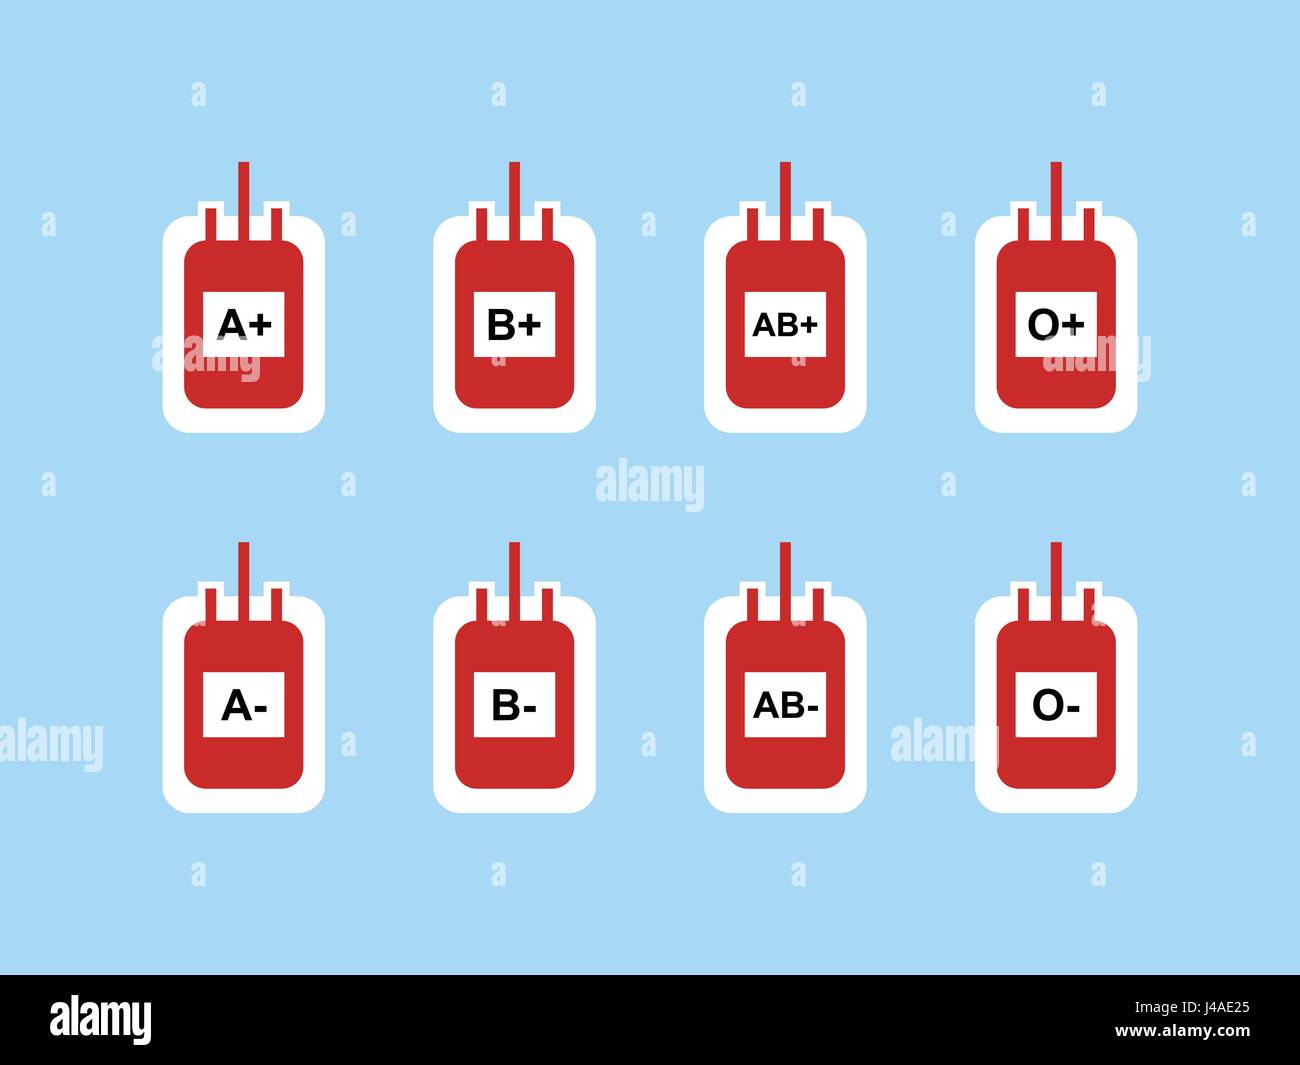 Blut-Taschen Zeichen Symbol Symbol für Blutgruppe A +, a-, B +, b-, AB +, AB-, O + und O - Vektor-Illustration Stock Vektor